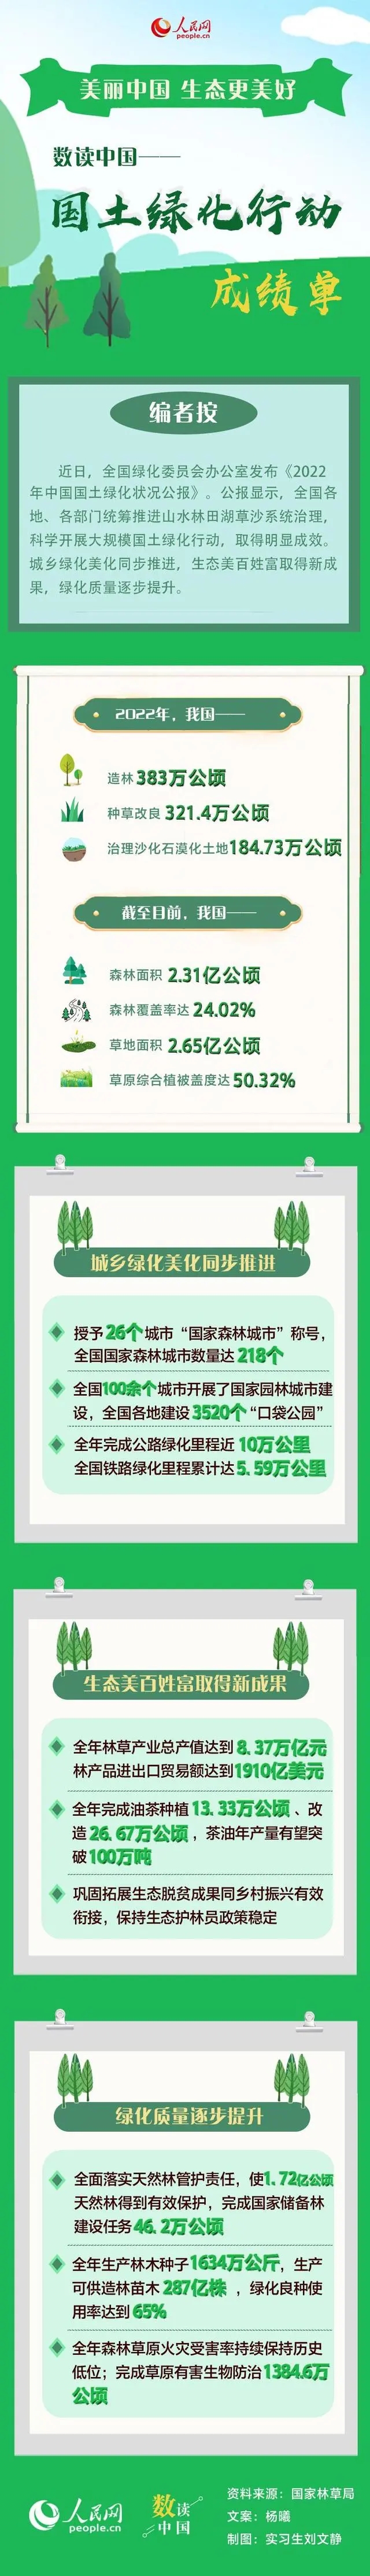 中国国土绿化行动成绩单怎么样